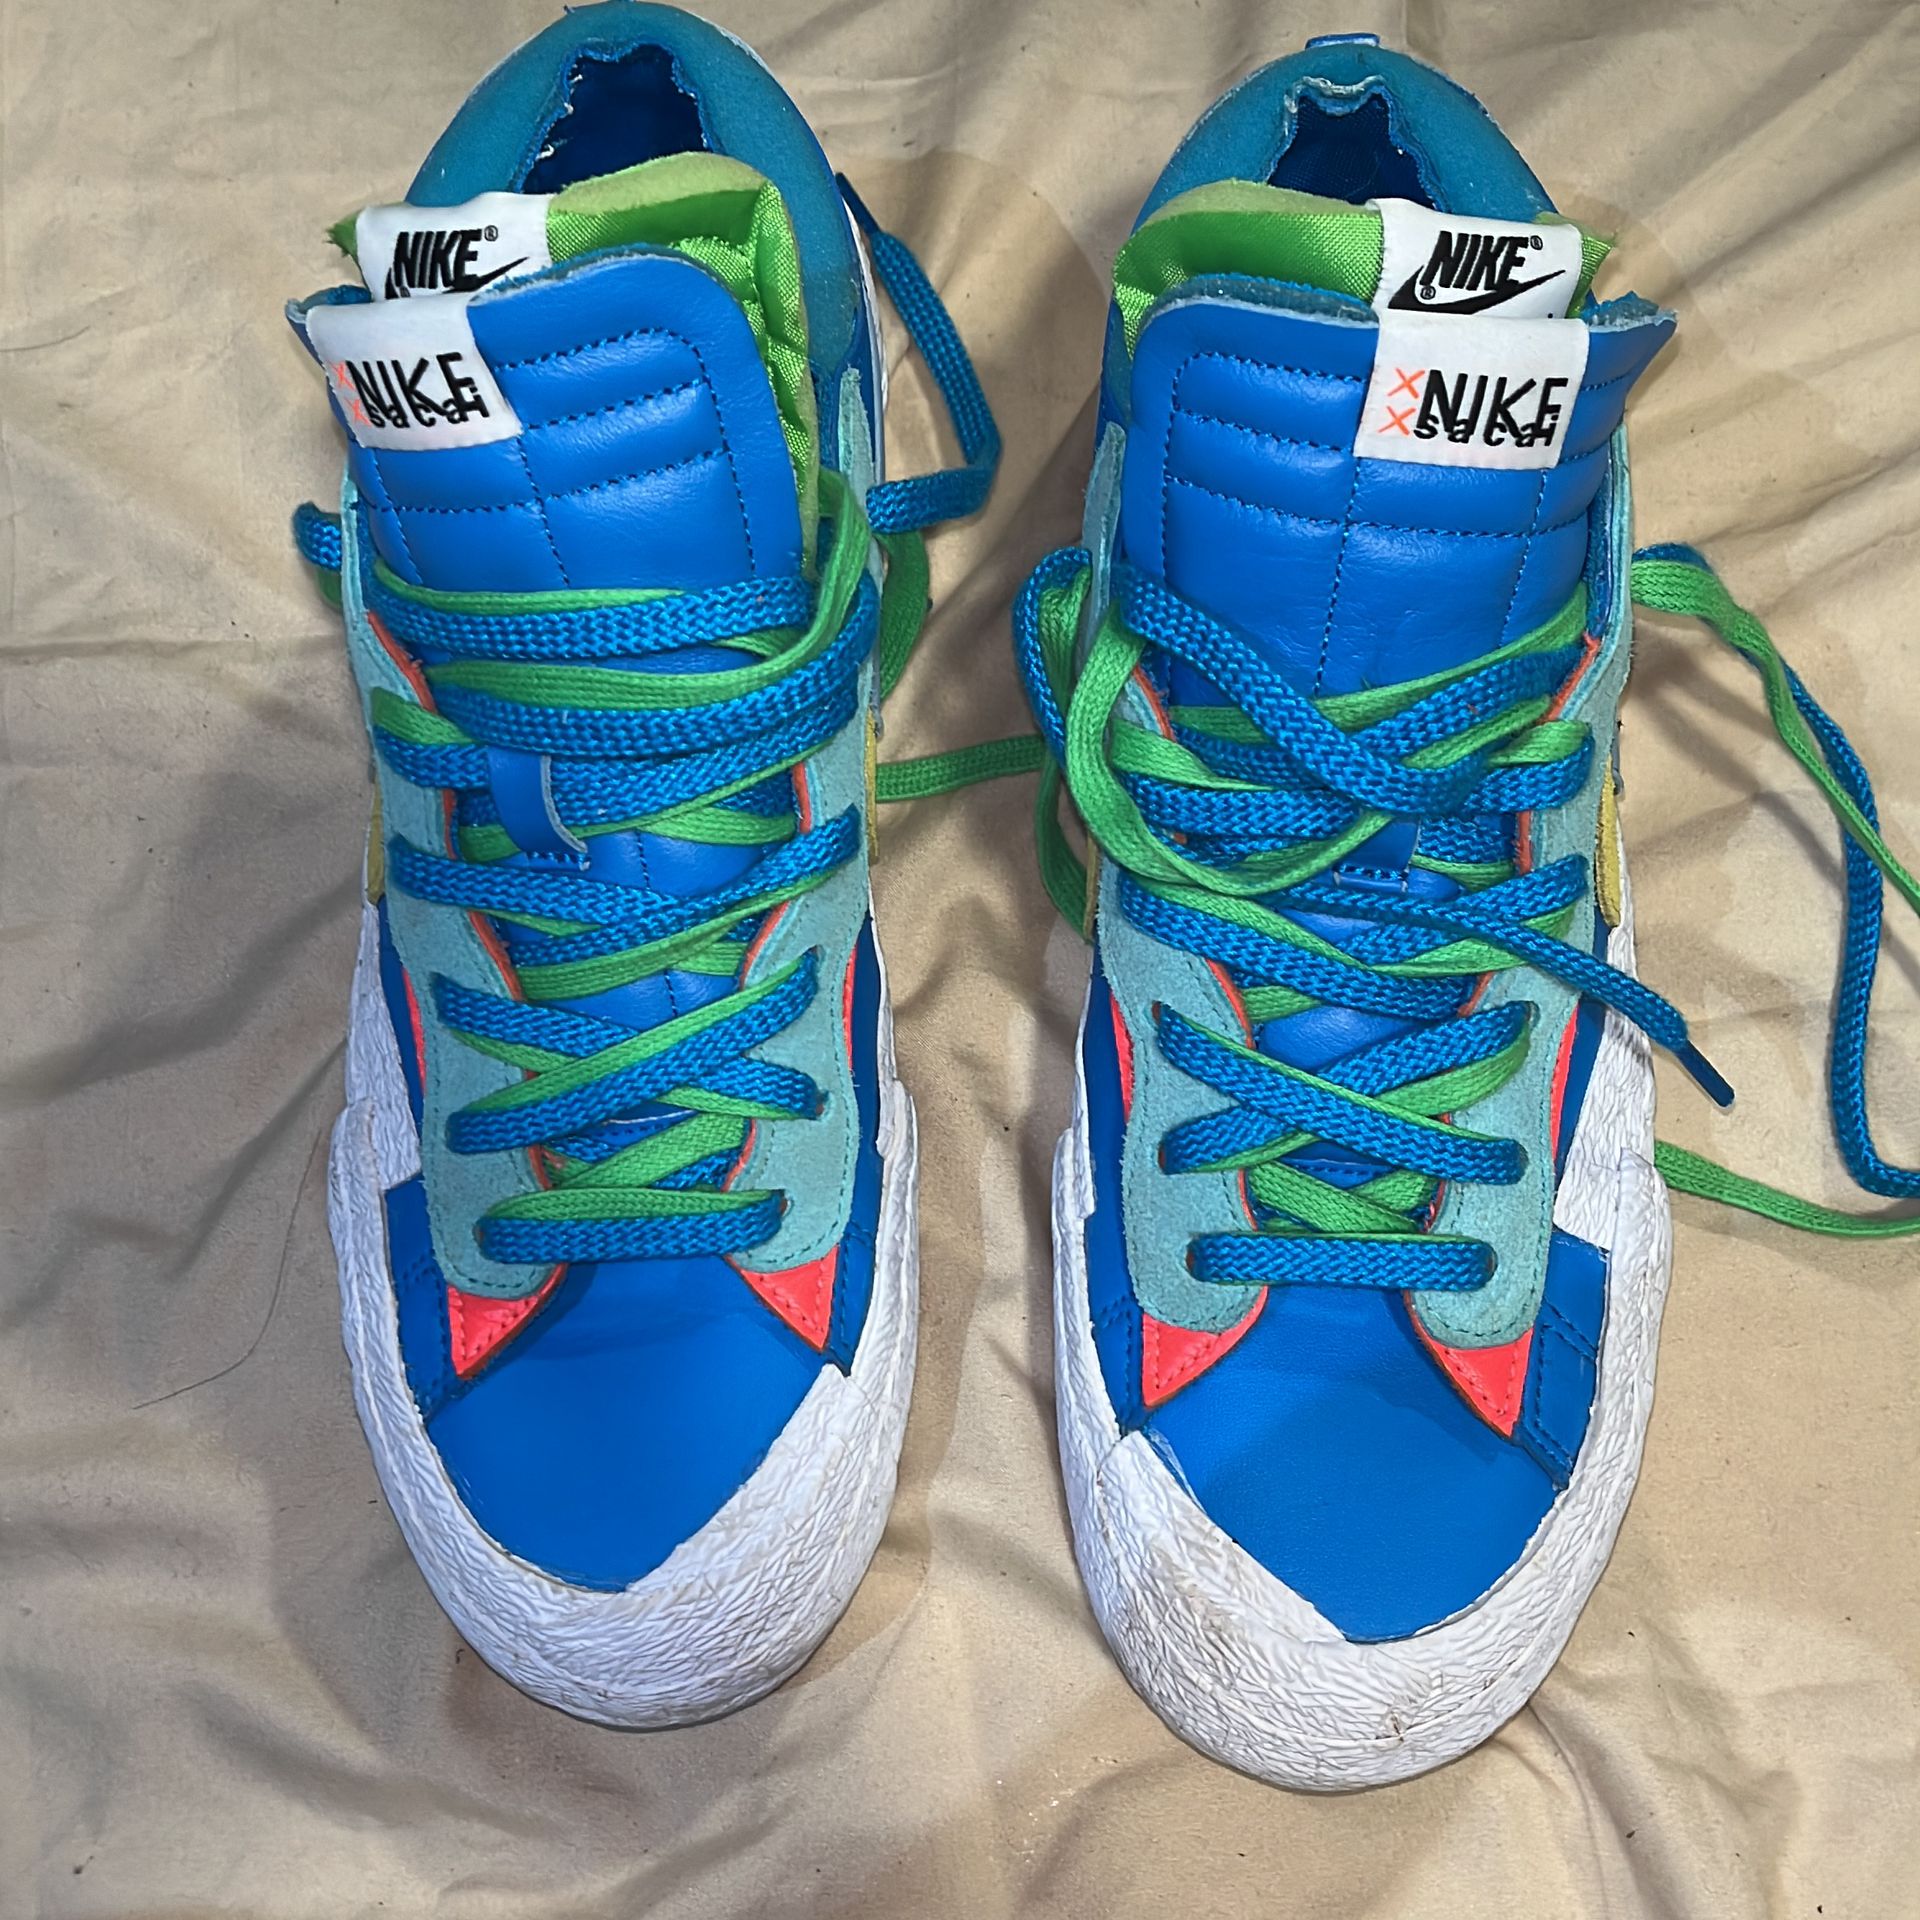 Nike KAWS x sacai x Blazer Low 'Neptune Blue'